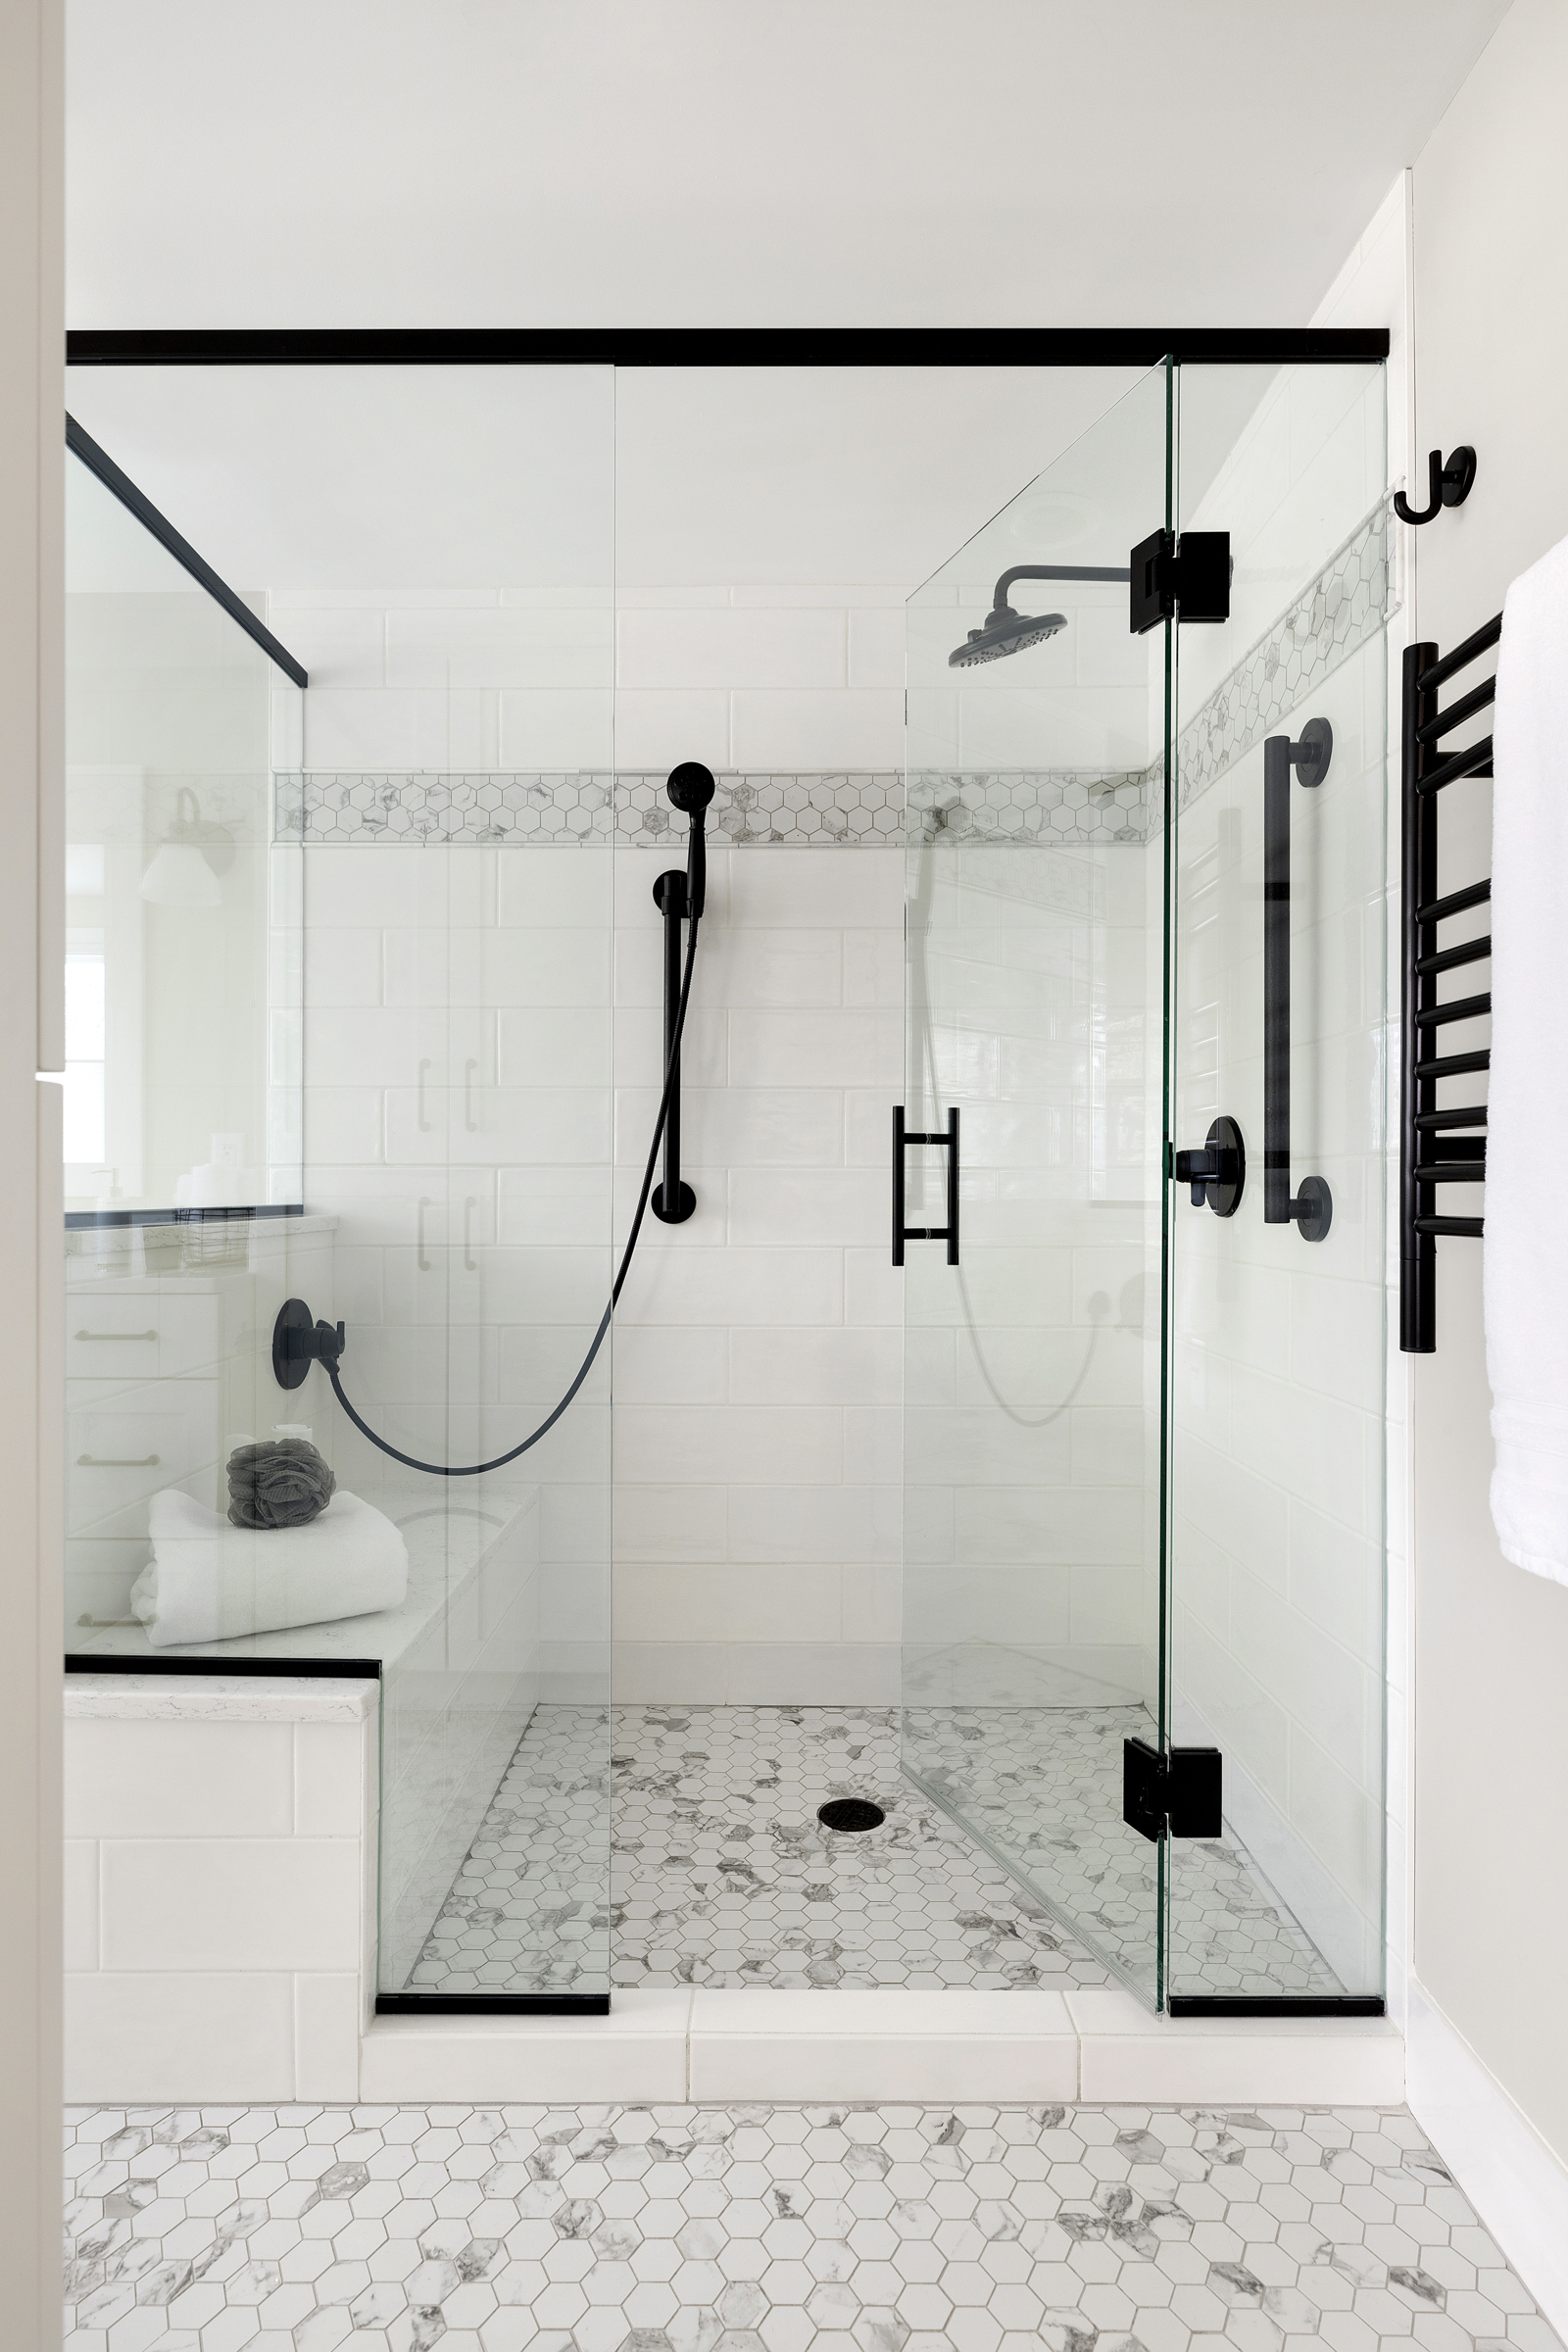 Bathroom remodel showing walk in shower with marble tile floor, black fixtures, and glass door